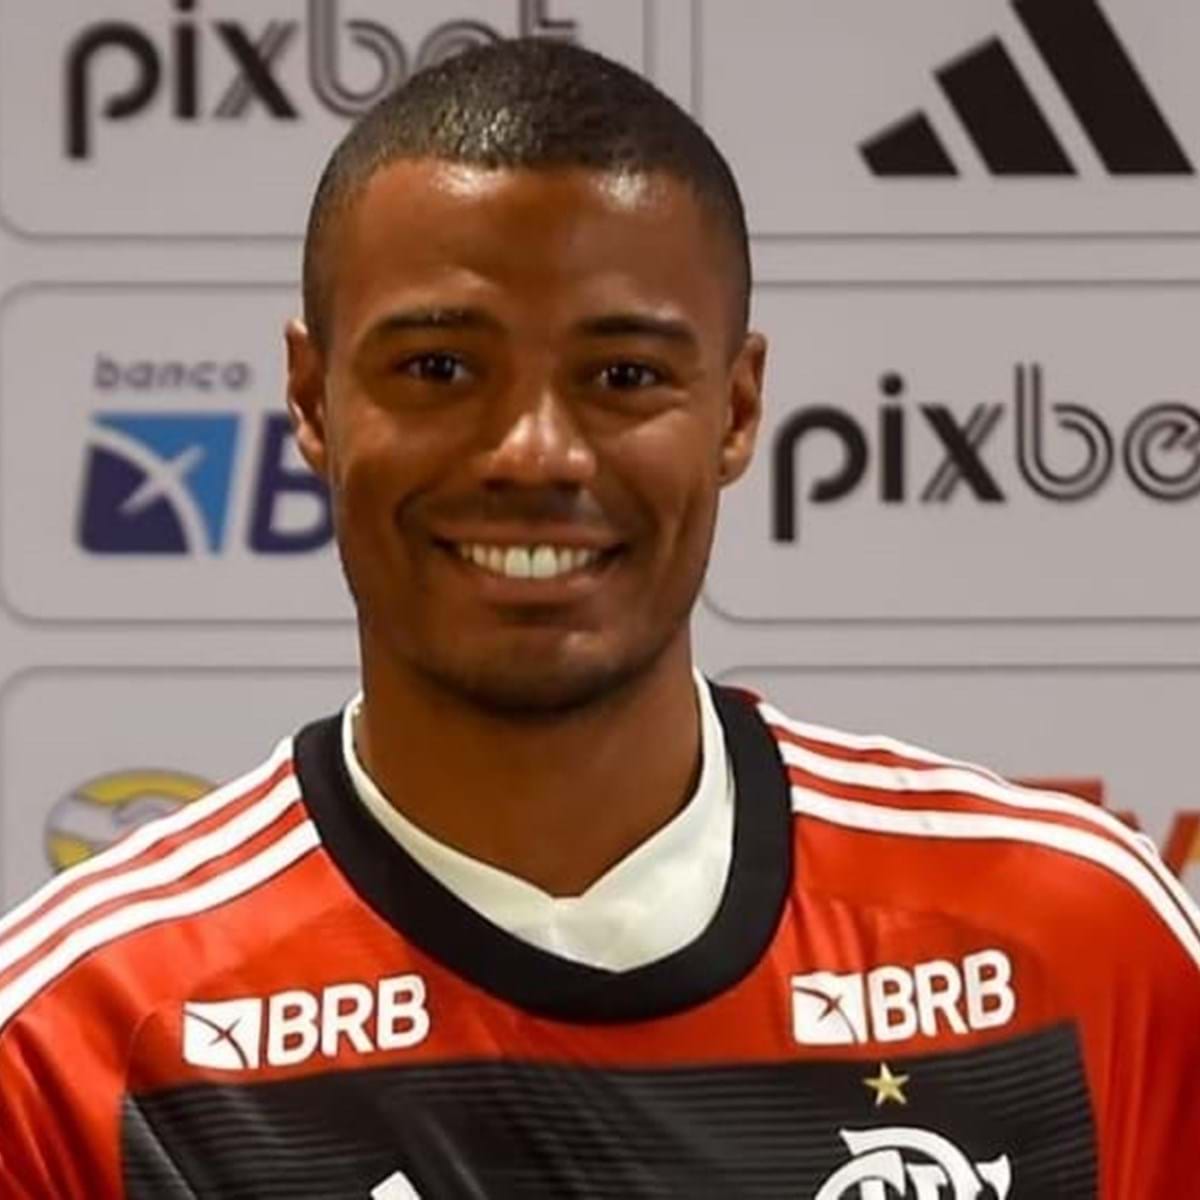 O melhor está chegando', disse De La Cruz em anúncio de chegada no Flamengo